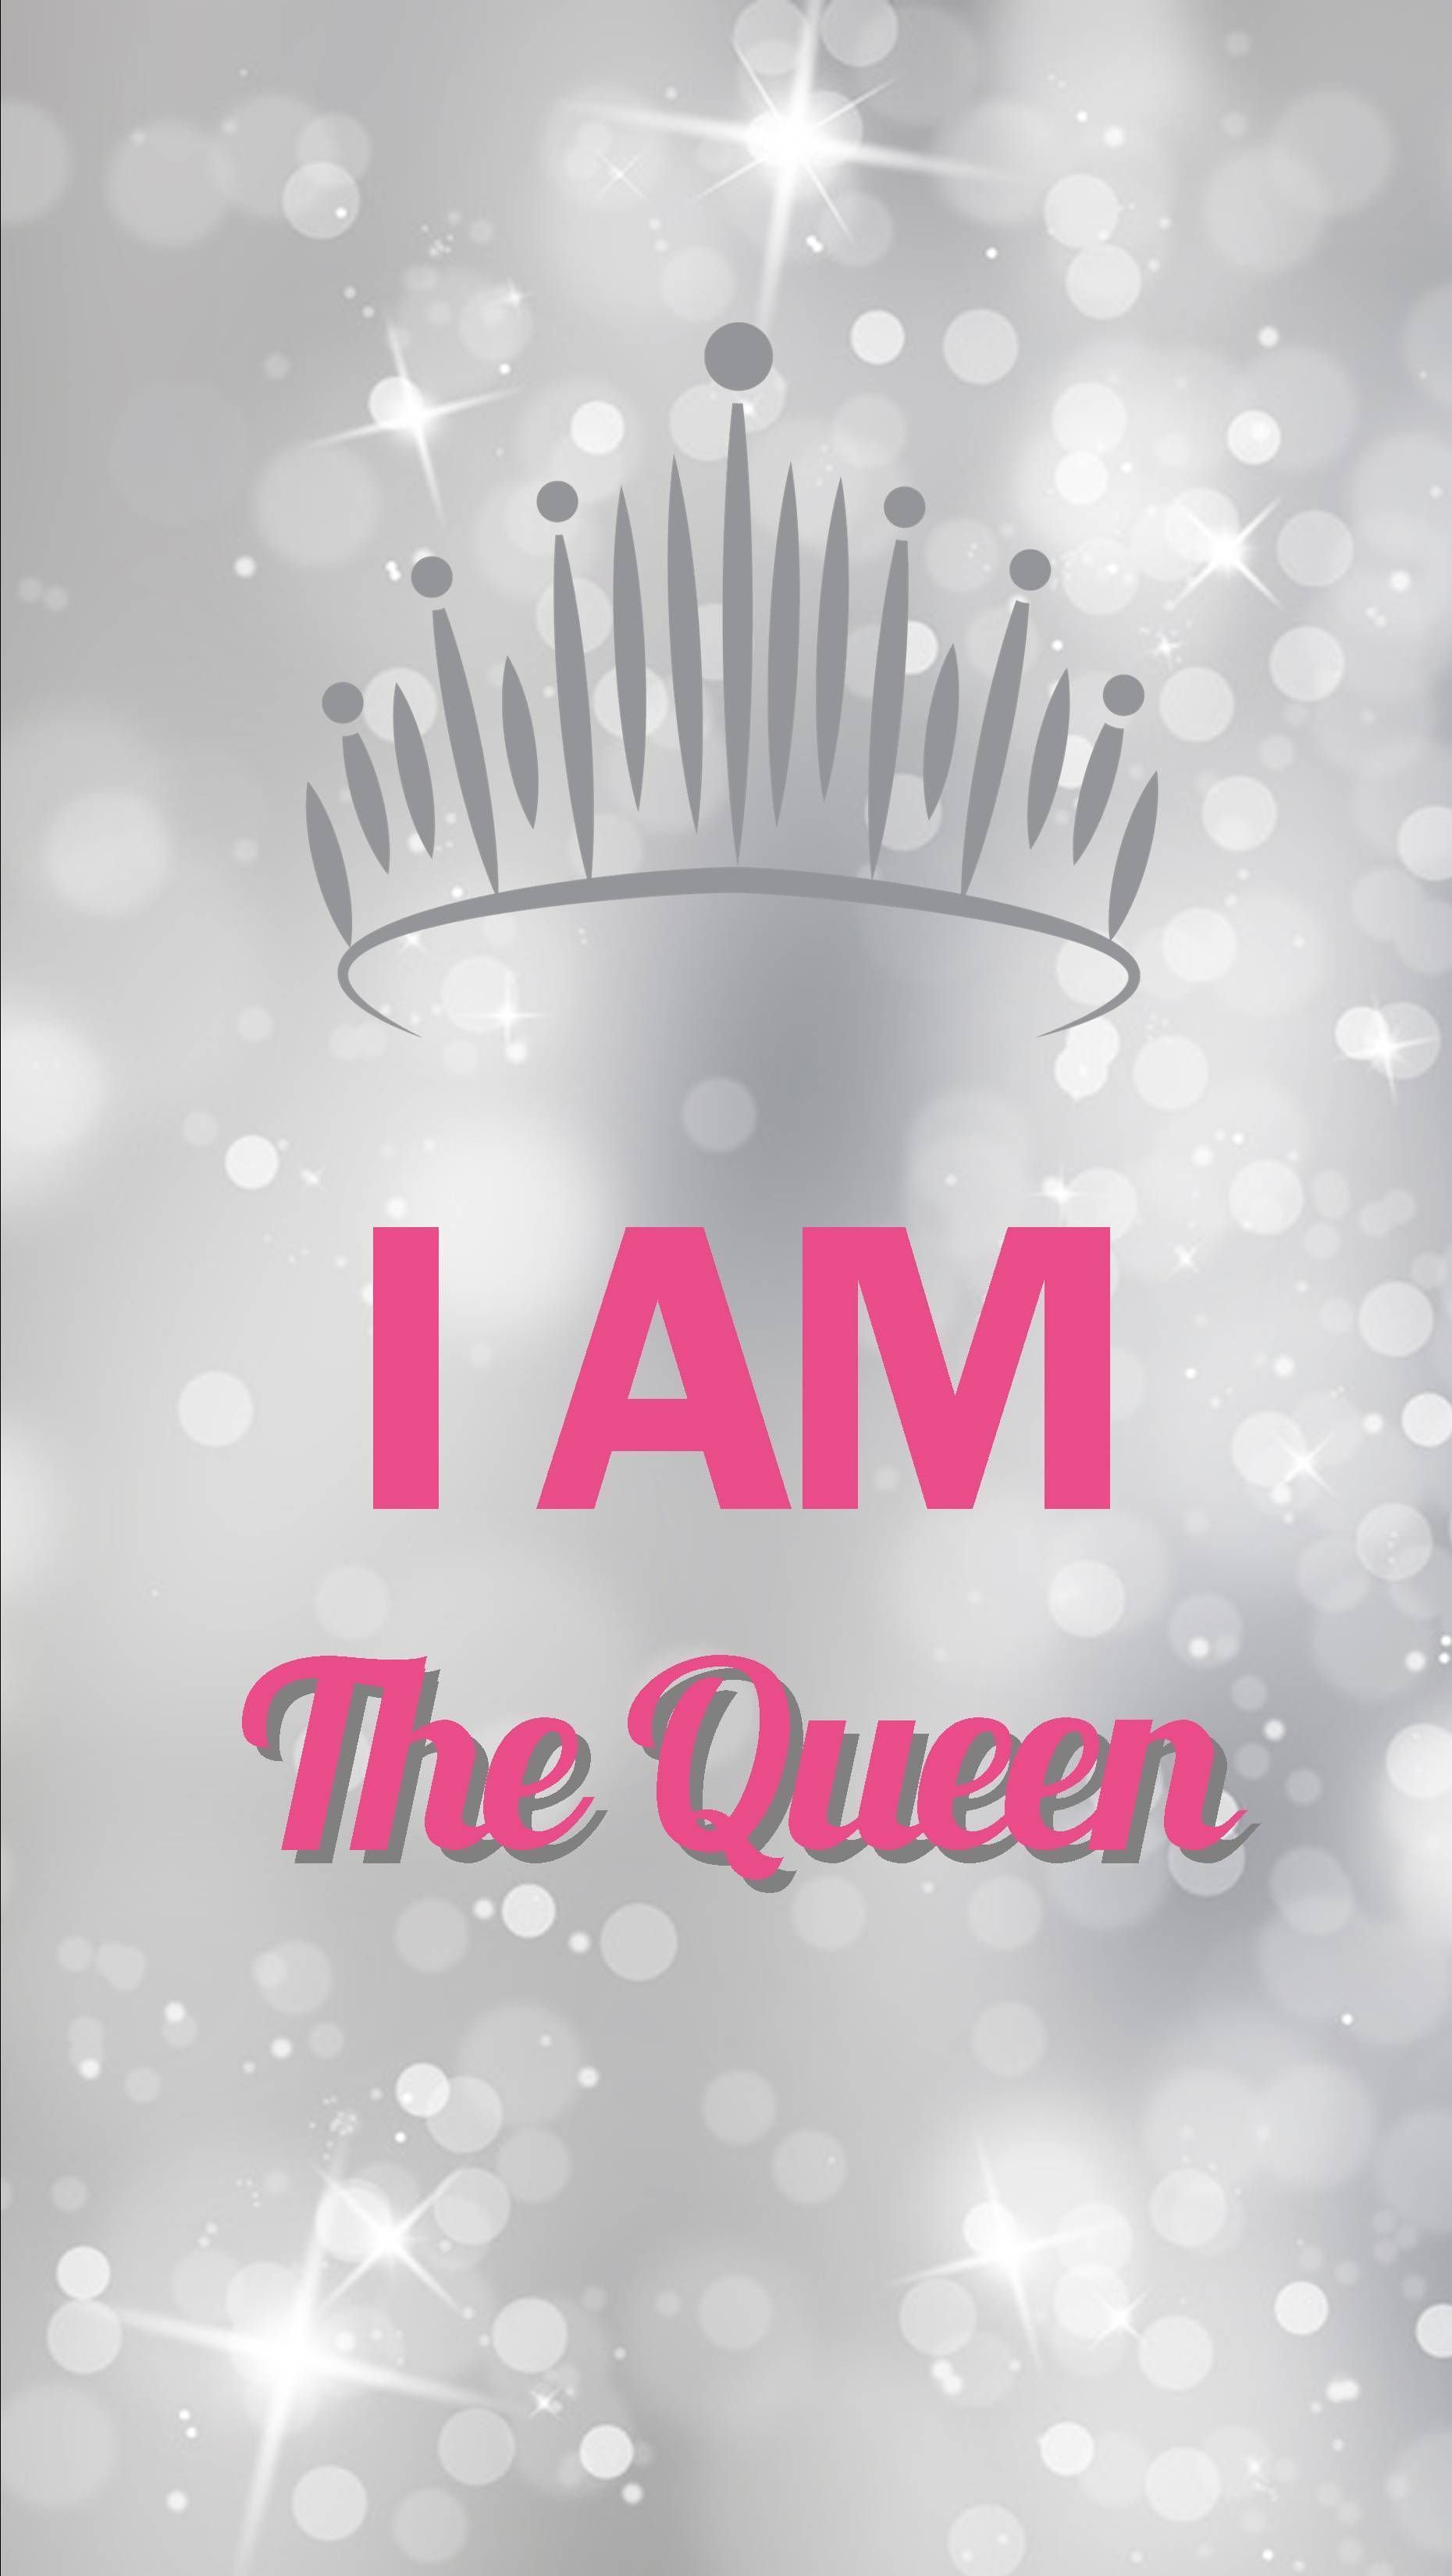 Free download Queen Wallpapers 720x1184 for your Desktop Mobile  Tablet   Explore 29 Queen Wallpapers  Queen Sonja Wallpaper Queen Elsa Wallpaper  Destiny Queen Wallpaper